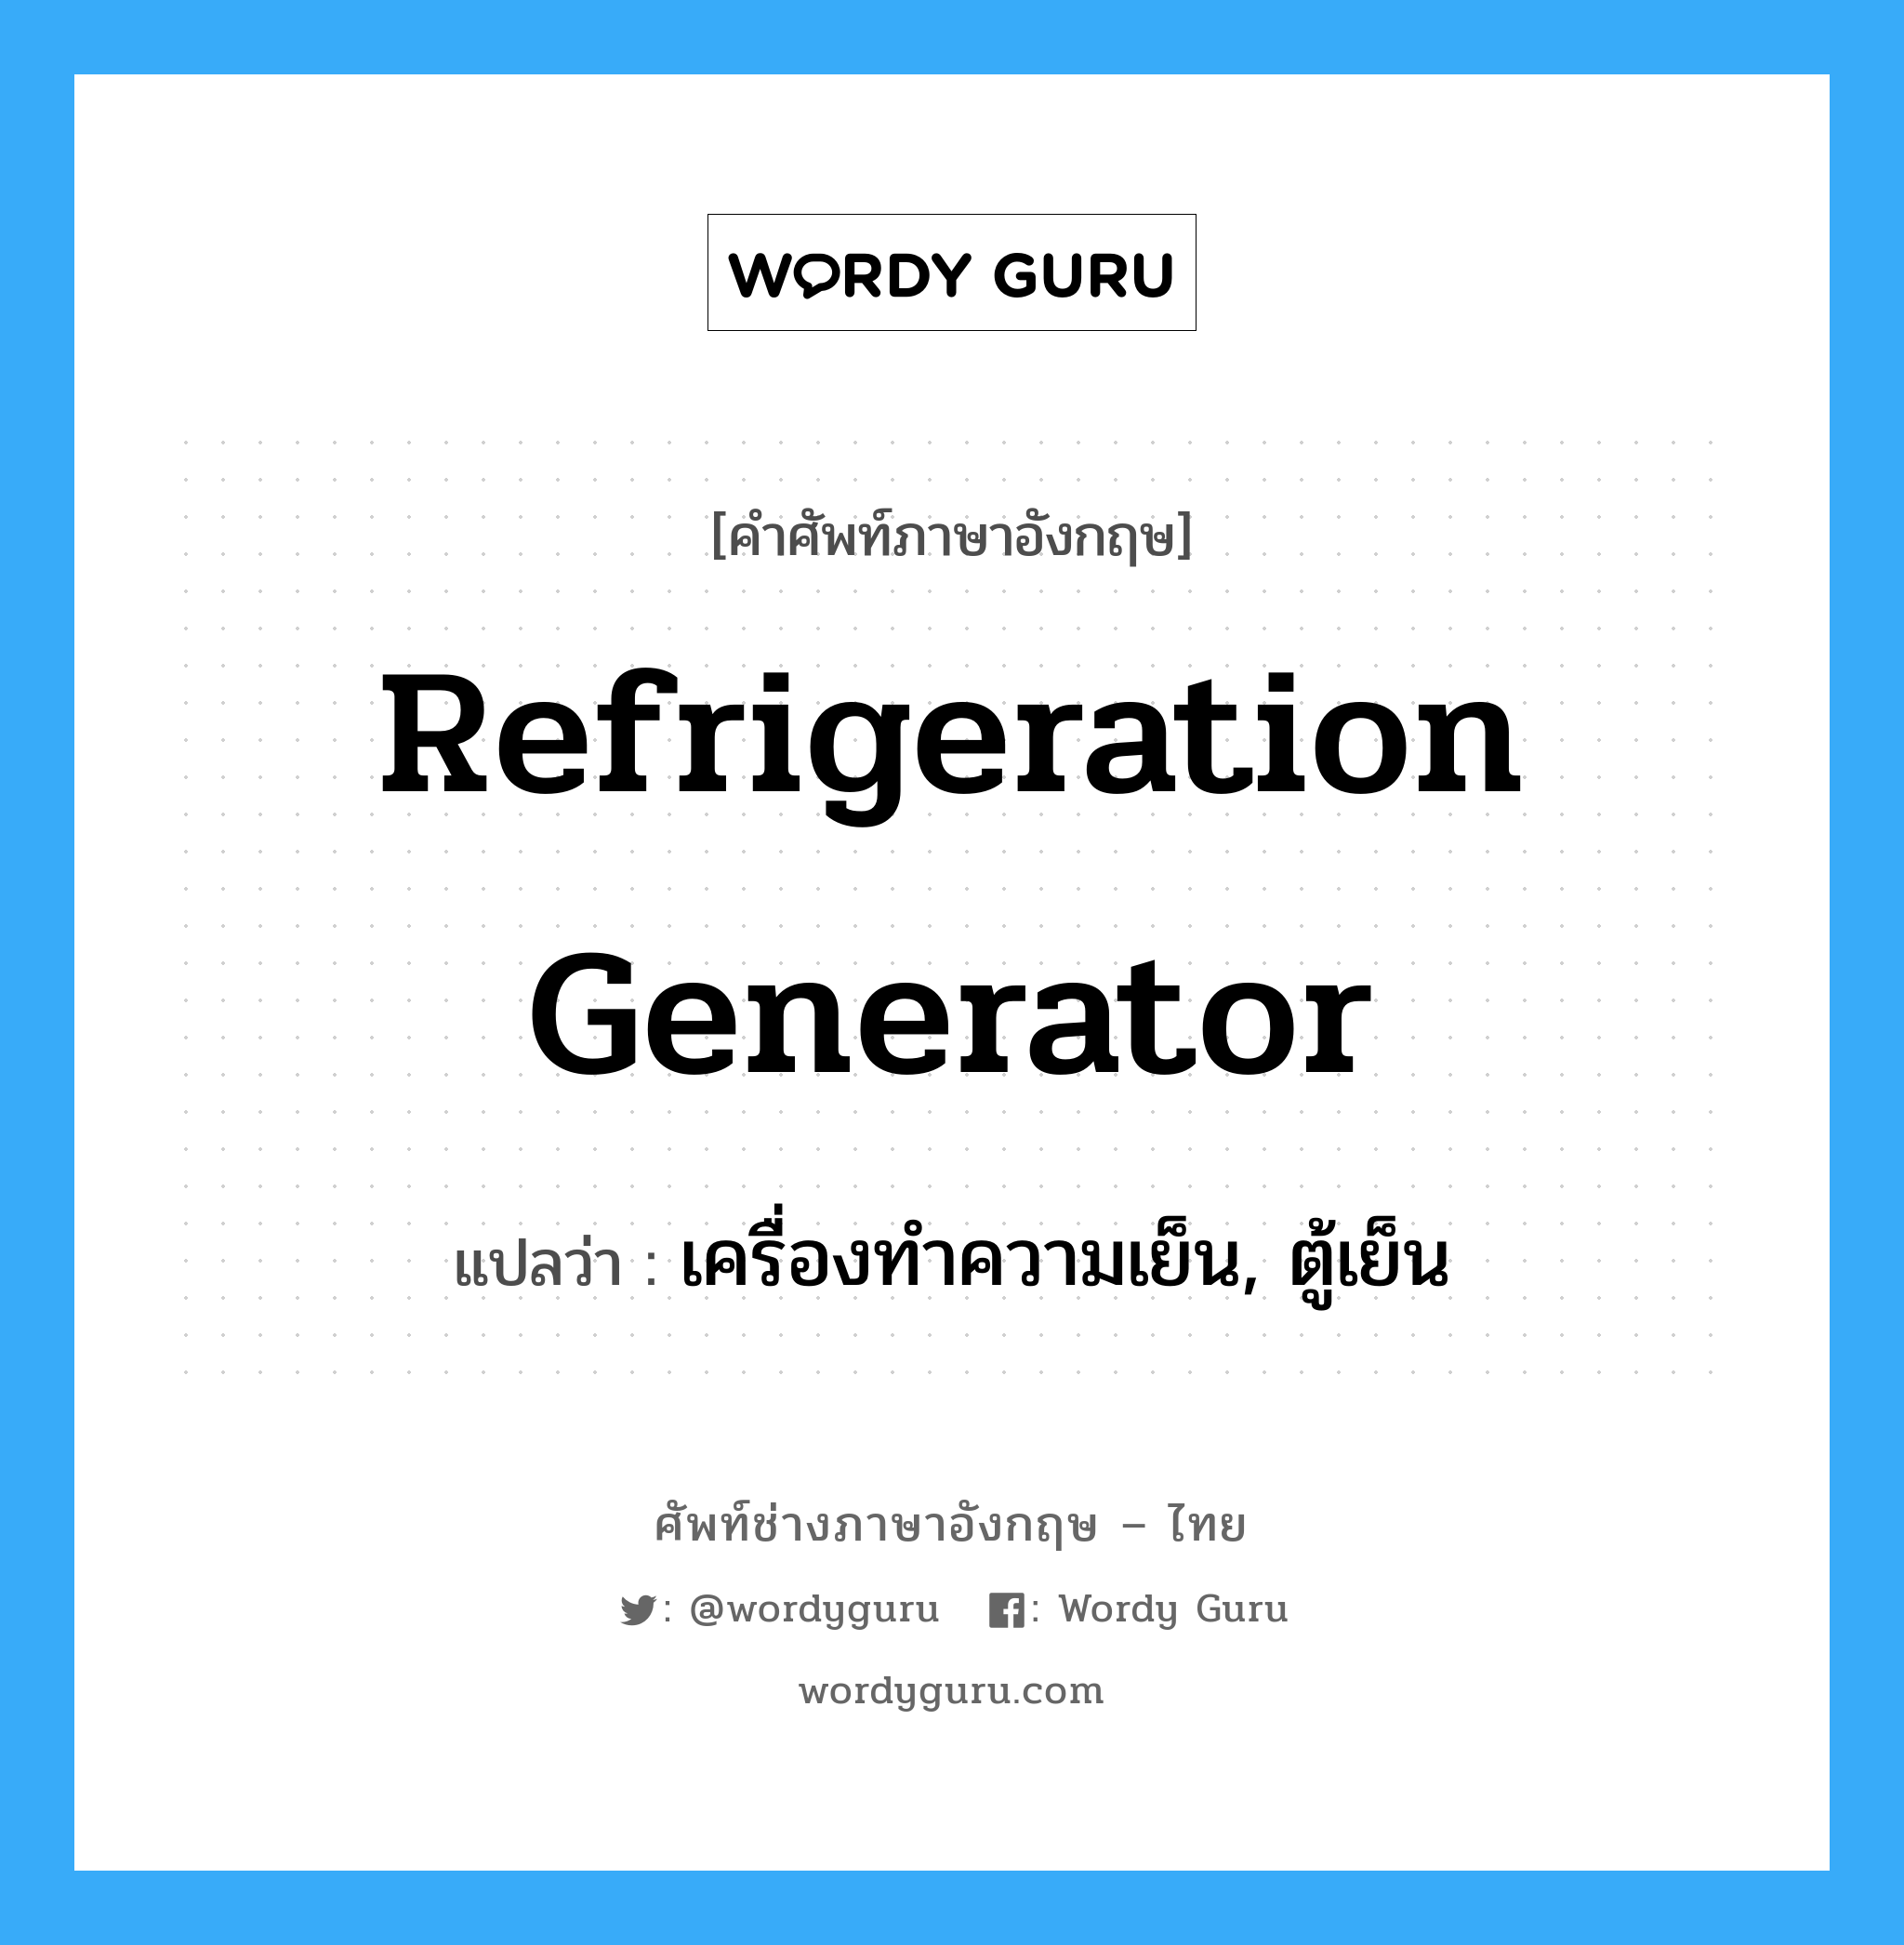 เครื่องทำความเย็น, ตู้เย็น ภาษาอังกฤษ?, คำศัพท์ช่างภาษาอังกฤษ - ไทย เครื่องทำความเย็น, ตู้เย็น คำศัพท์ภาษาอังกฤษ เครื่องทำความเย็น, ตู้เย็น แปลว่า refrigeration generator